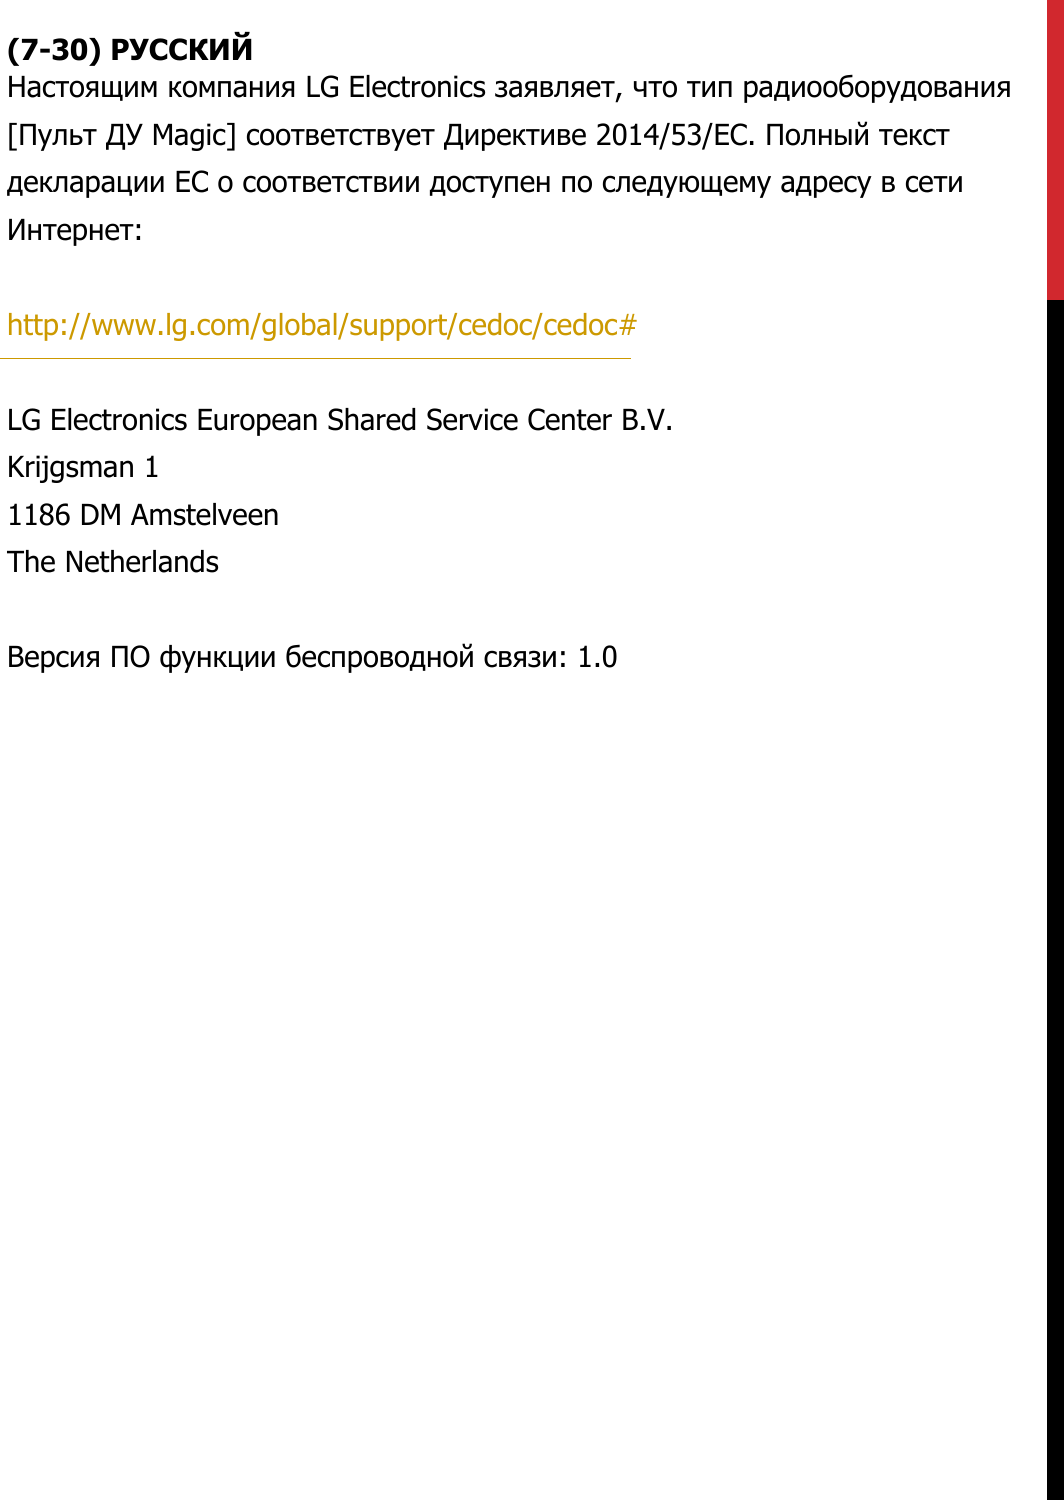 (7-30) РУССКИЙ Настоящим компания LG Electronics заявляет, что тип радиооборудования [Пульт ДУ Magic] соответствует Директиве 2014/53/ЕС. Полный текст декларации ЕС о соответствии доступен по следующему адресу в сети Интернет:   http://www.lg.com/global/support/cedoc/cedoc#   LG Electronics European Shared Service Center B.V.  Krijgsman 1  1186 DM Amstelveen  The Netherlands   Версия ПО функции беспроводной связи: 1.0 